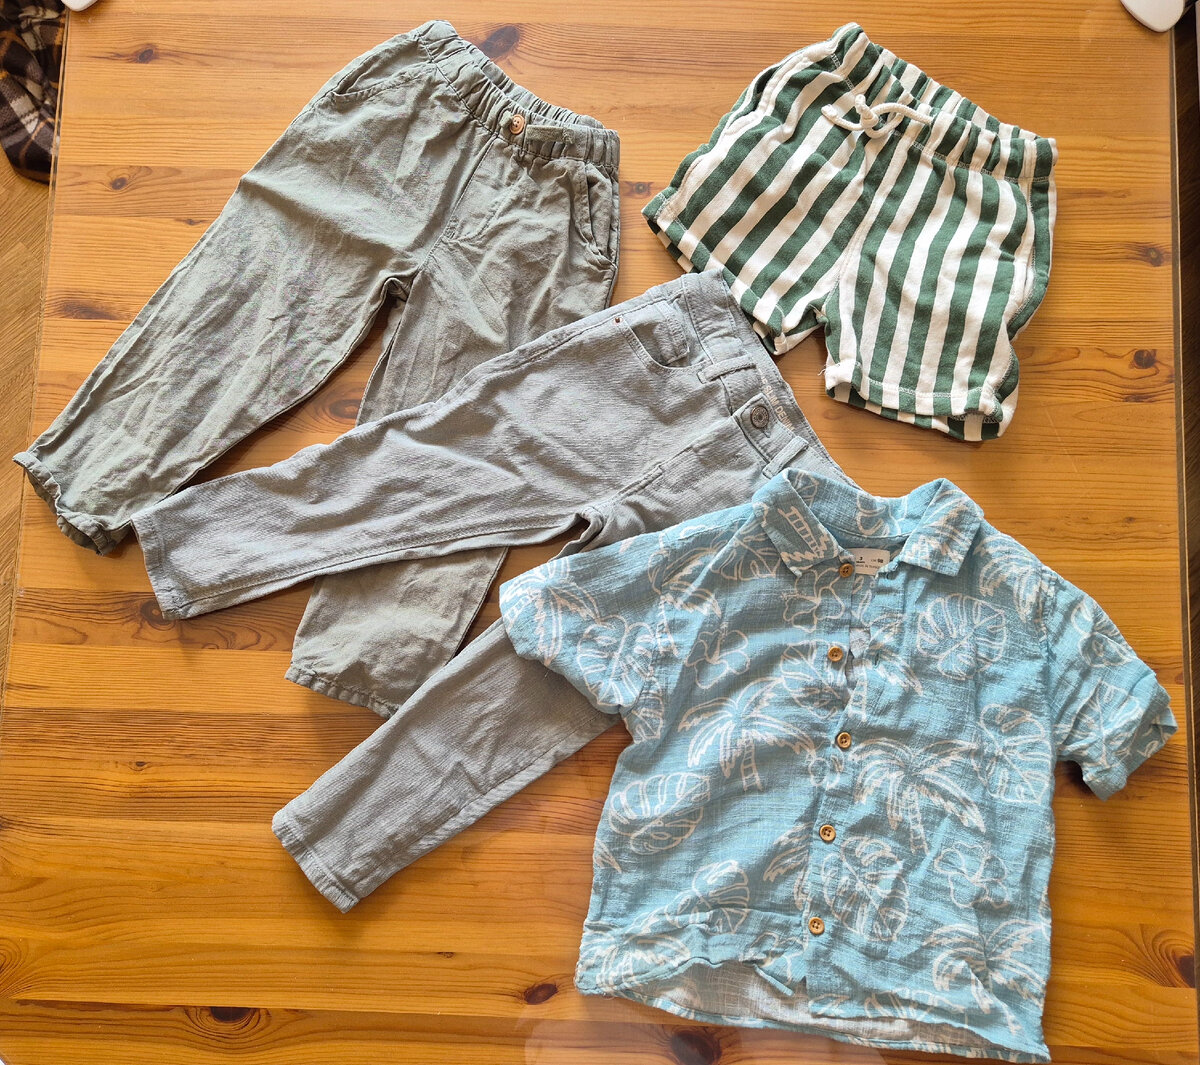 Льняные брюки в цвете хаки (15 евро), светлые джинсы на распродаже (8 евро), рубашка в гавайском стиле (16 евро), полосатые шорты (9 евро) - всё для Гришки